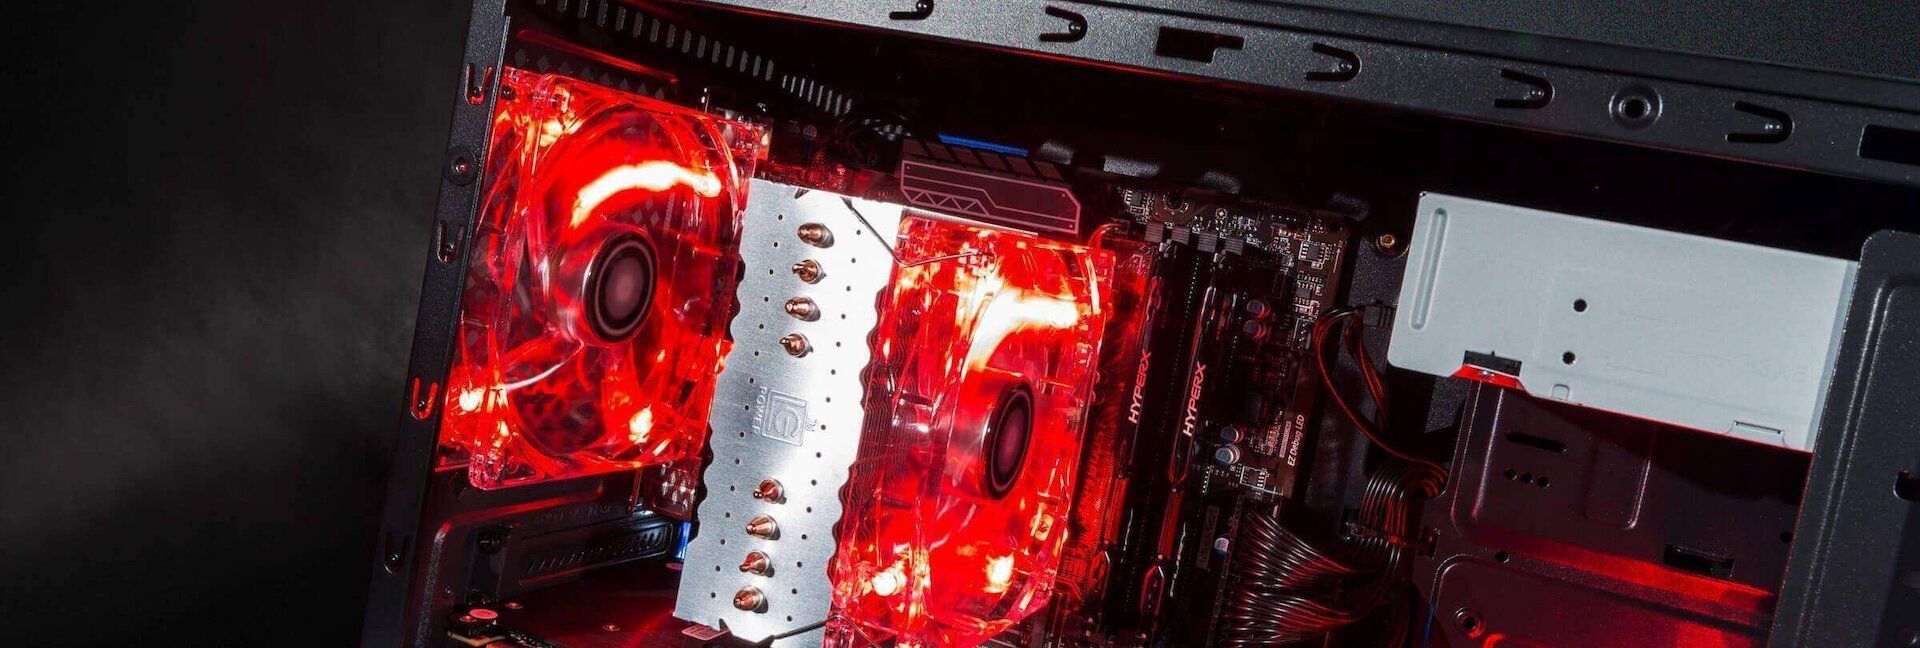 CPU Kühlung Gaming PC